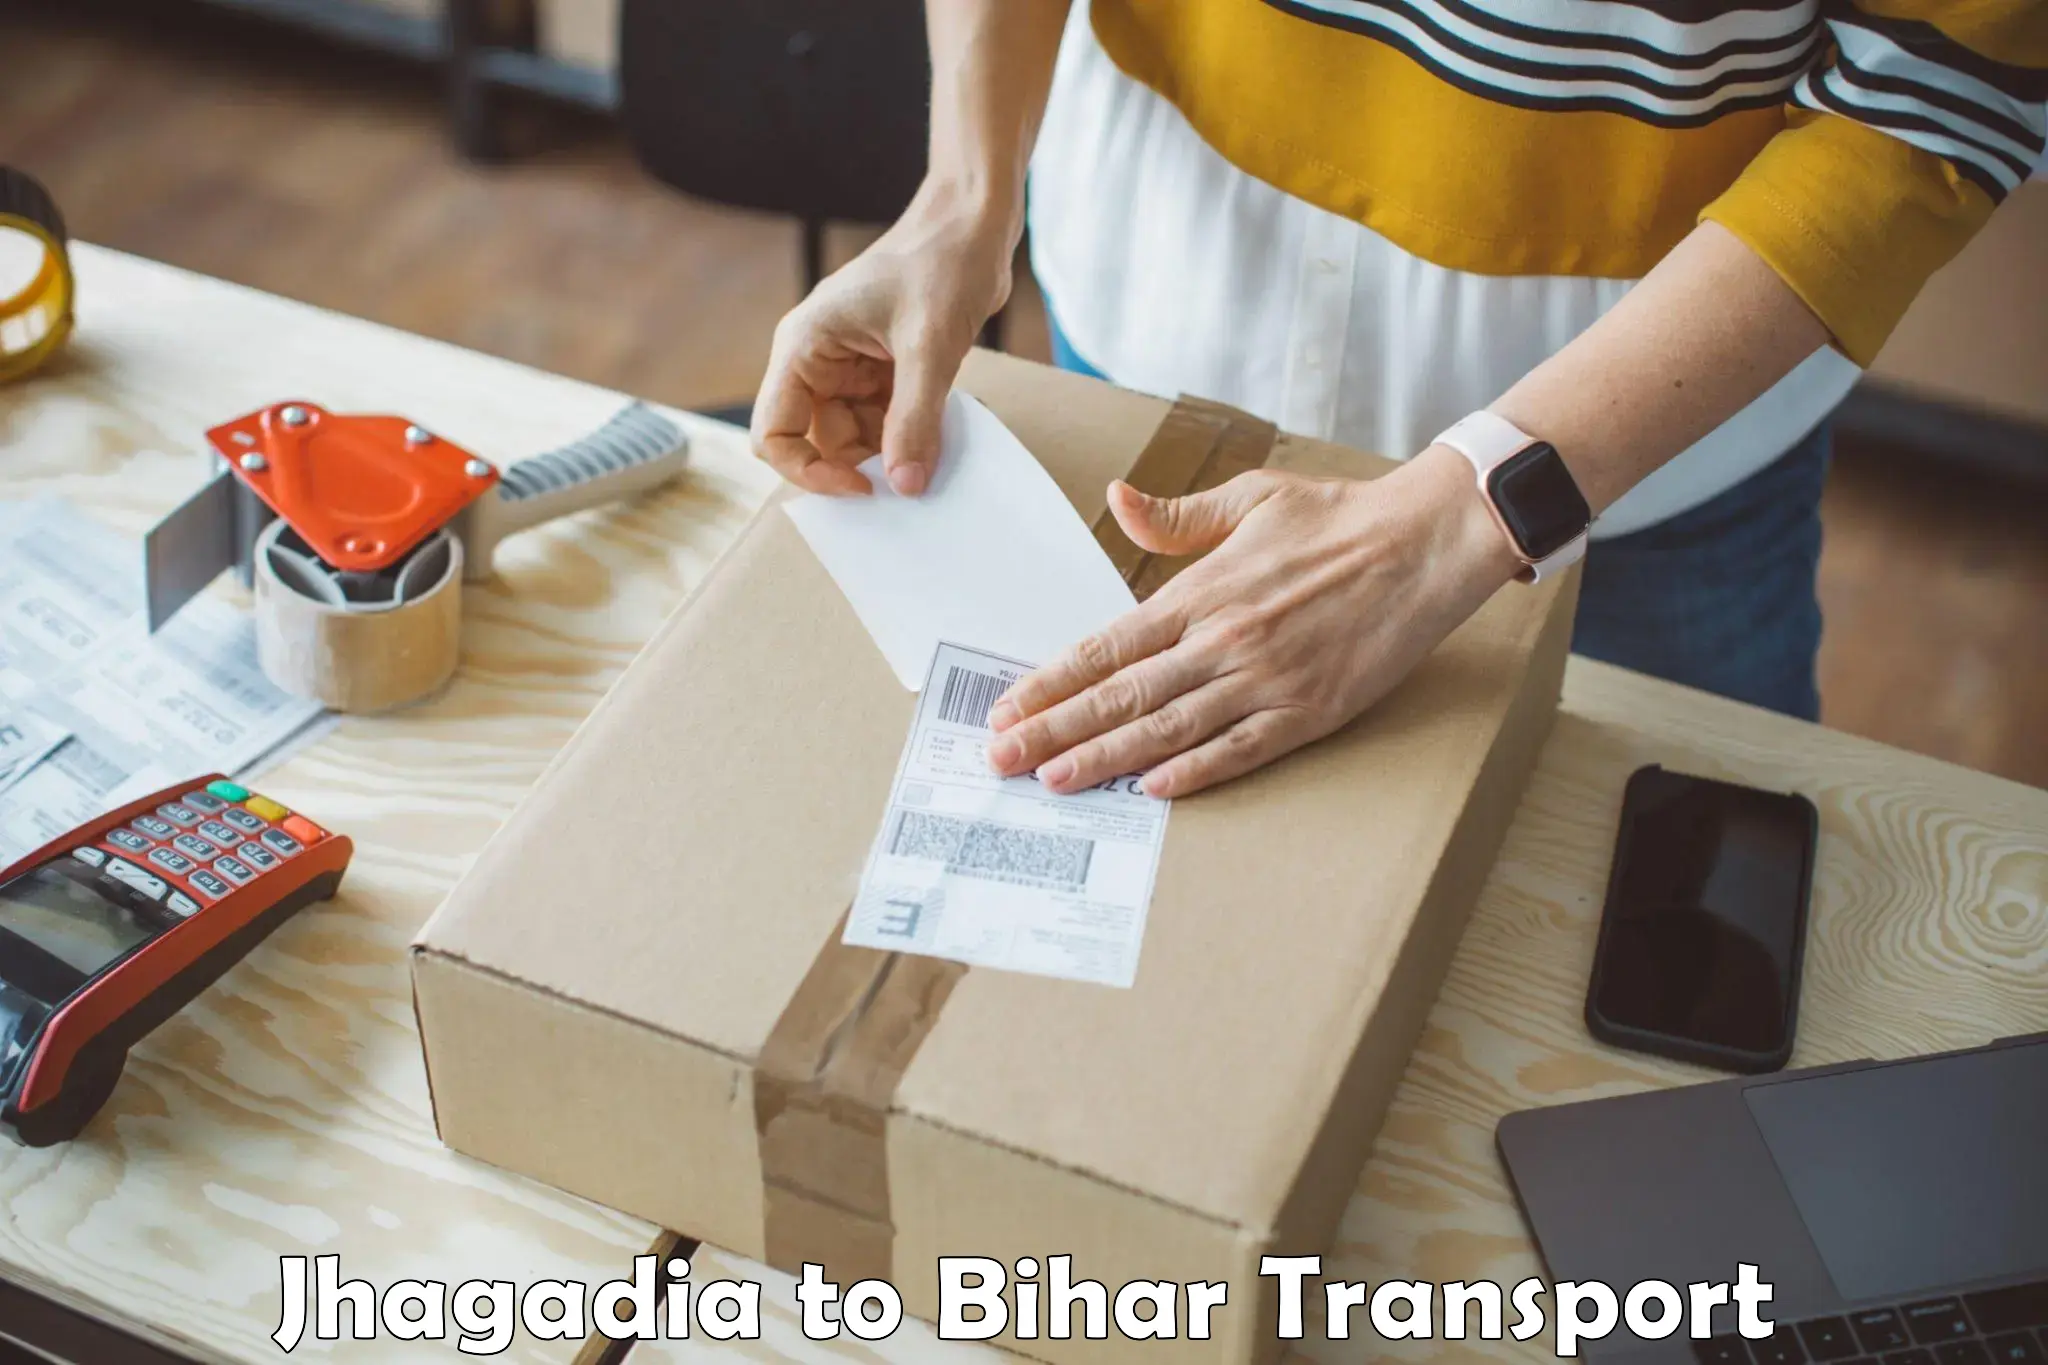 Furniture transport service Jhagadia to Dighwara